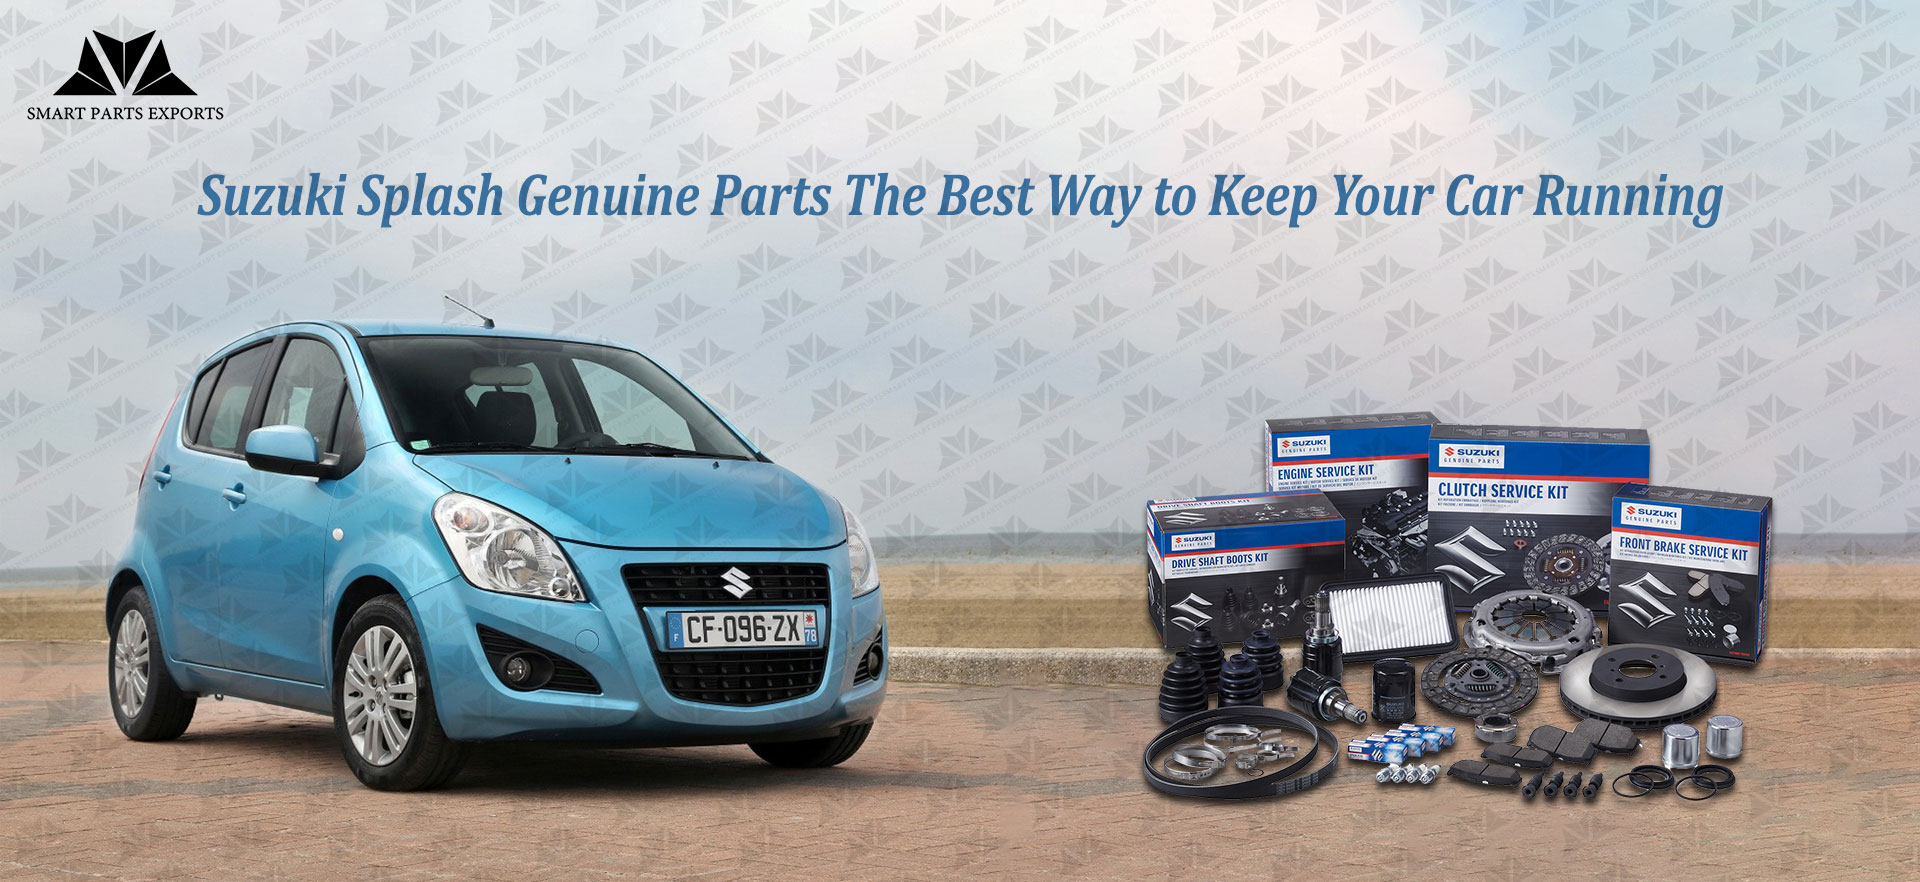 Suzuki Splash Genuine Parts: The Best Way to Keep Your Car Running